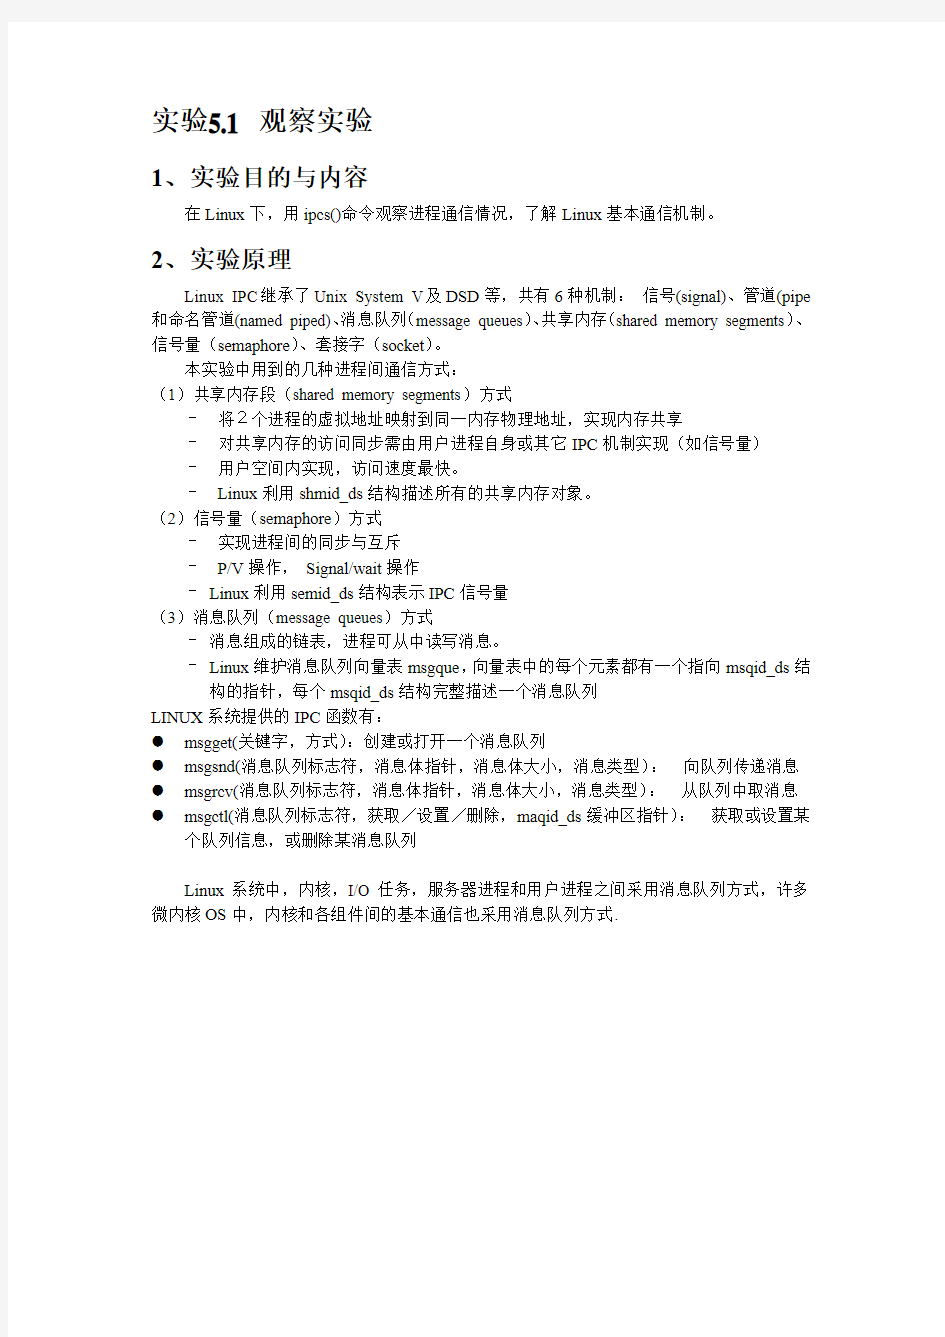 北京邮电大学操作系统实验 (2)